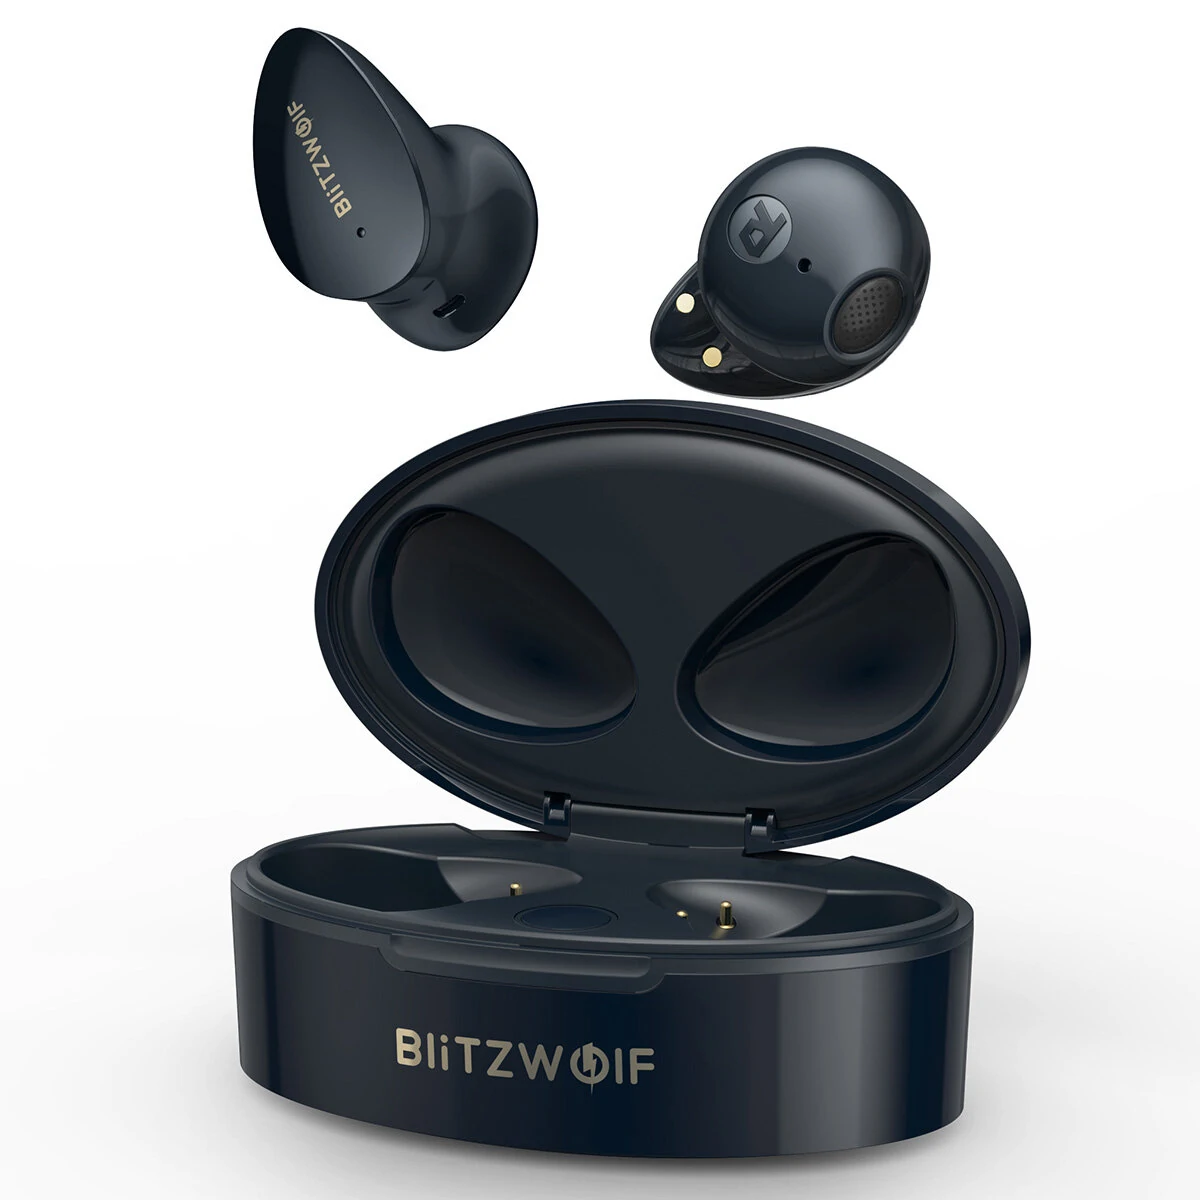 Црни петак - супер јефтине слушалице БлитзВолф БВ-ФПЕ2 ТВС